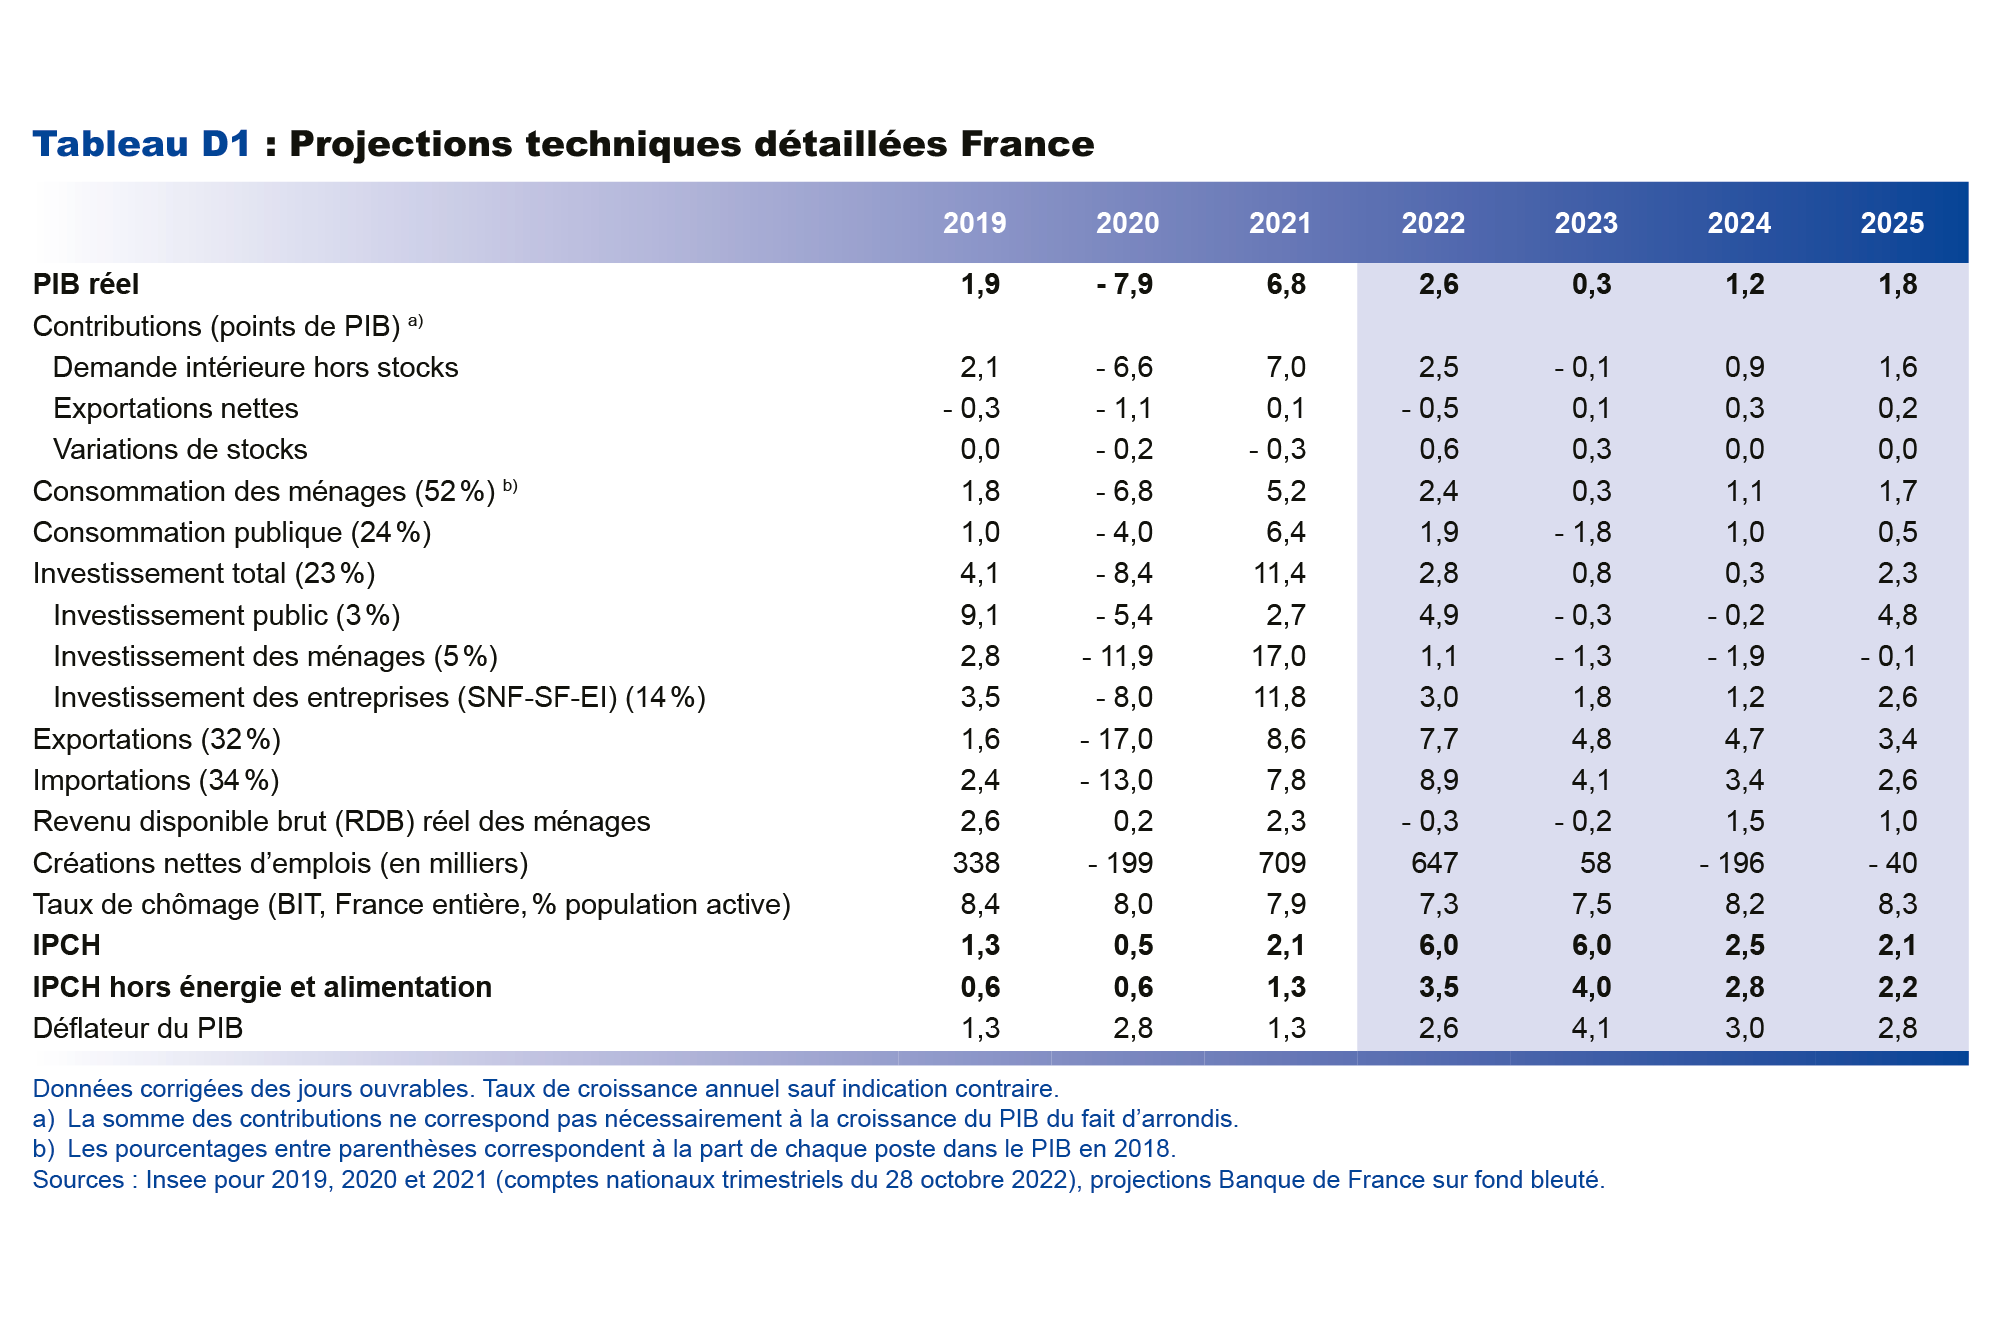 Projections techniques détaillées France 2019-2025